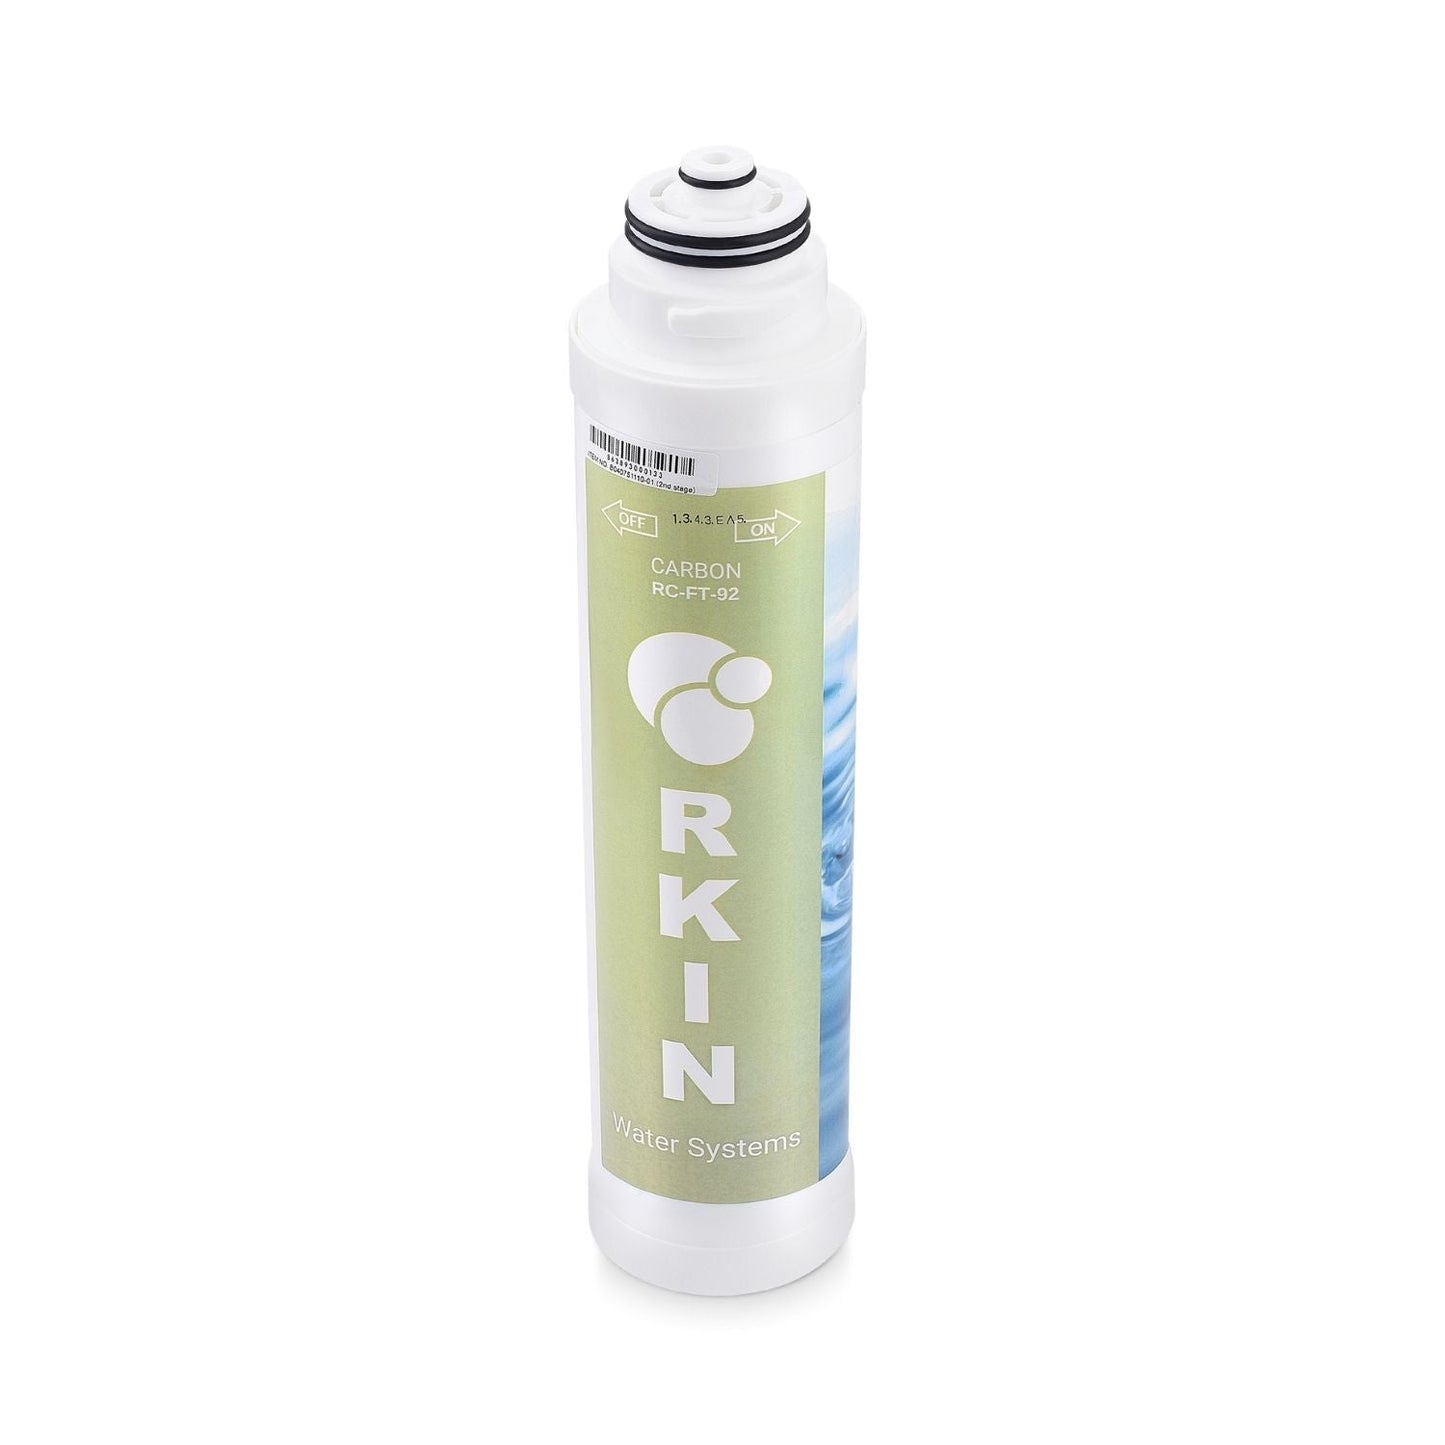 RKIN Carbon Block Filter - RKIN